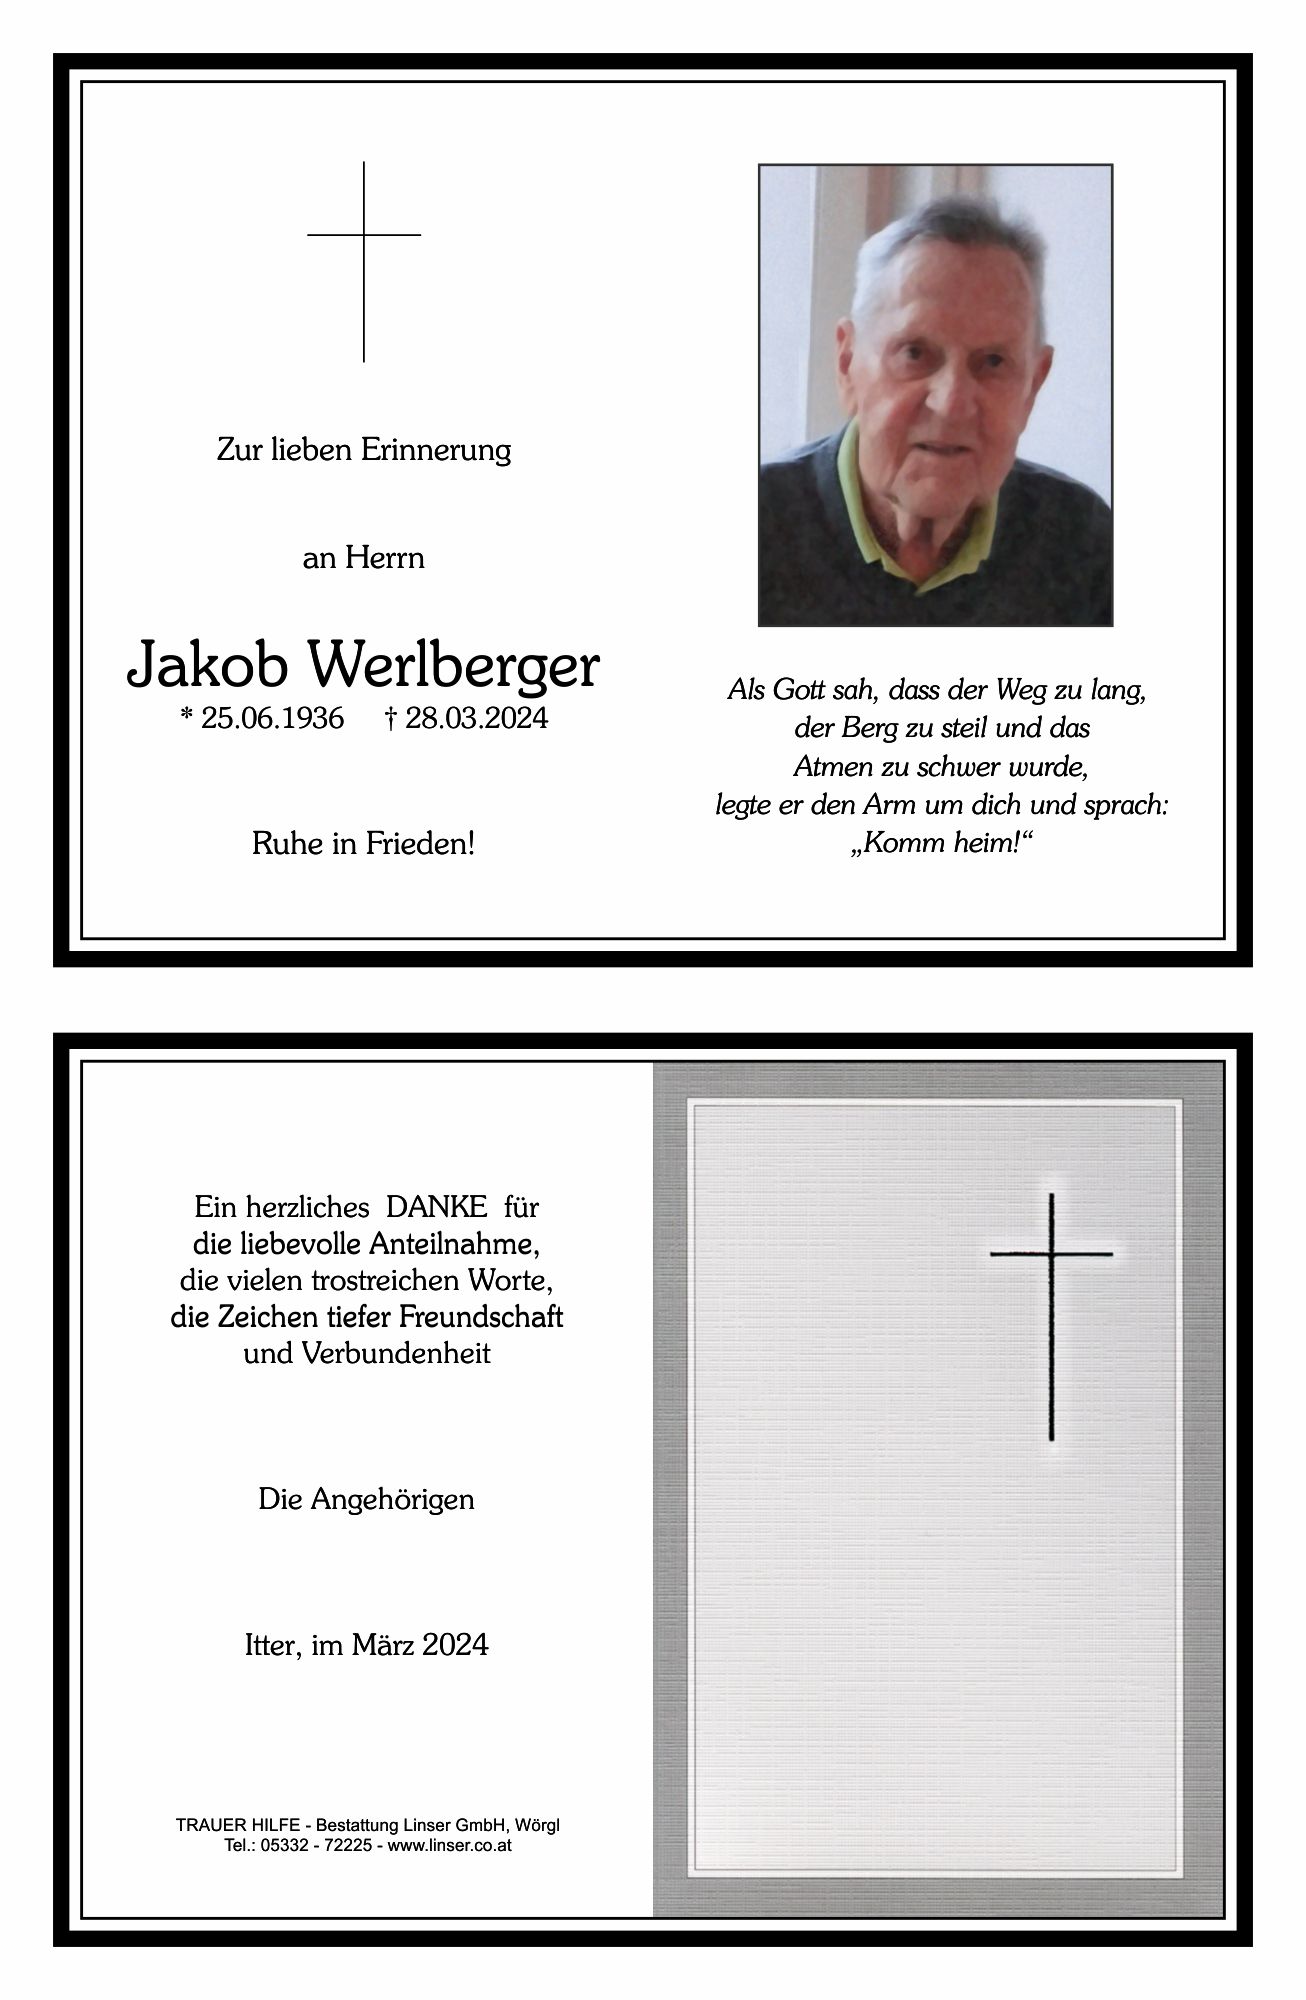 Jakob Werlberger